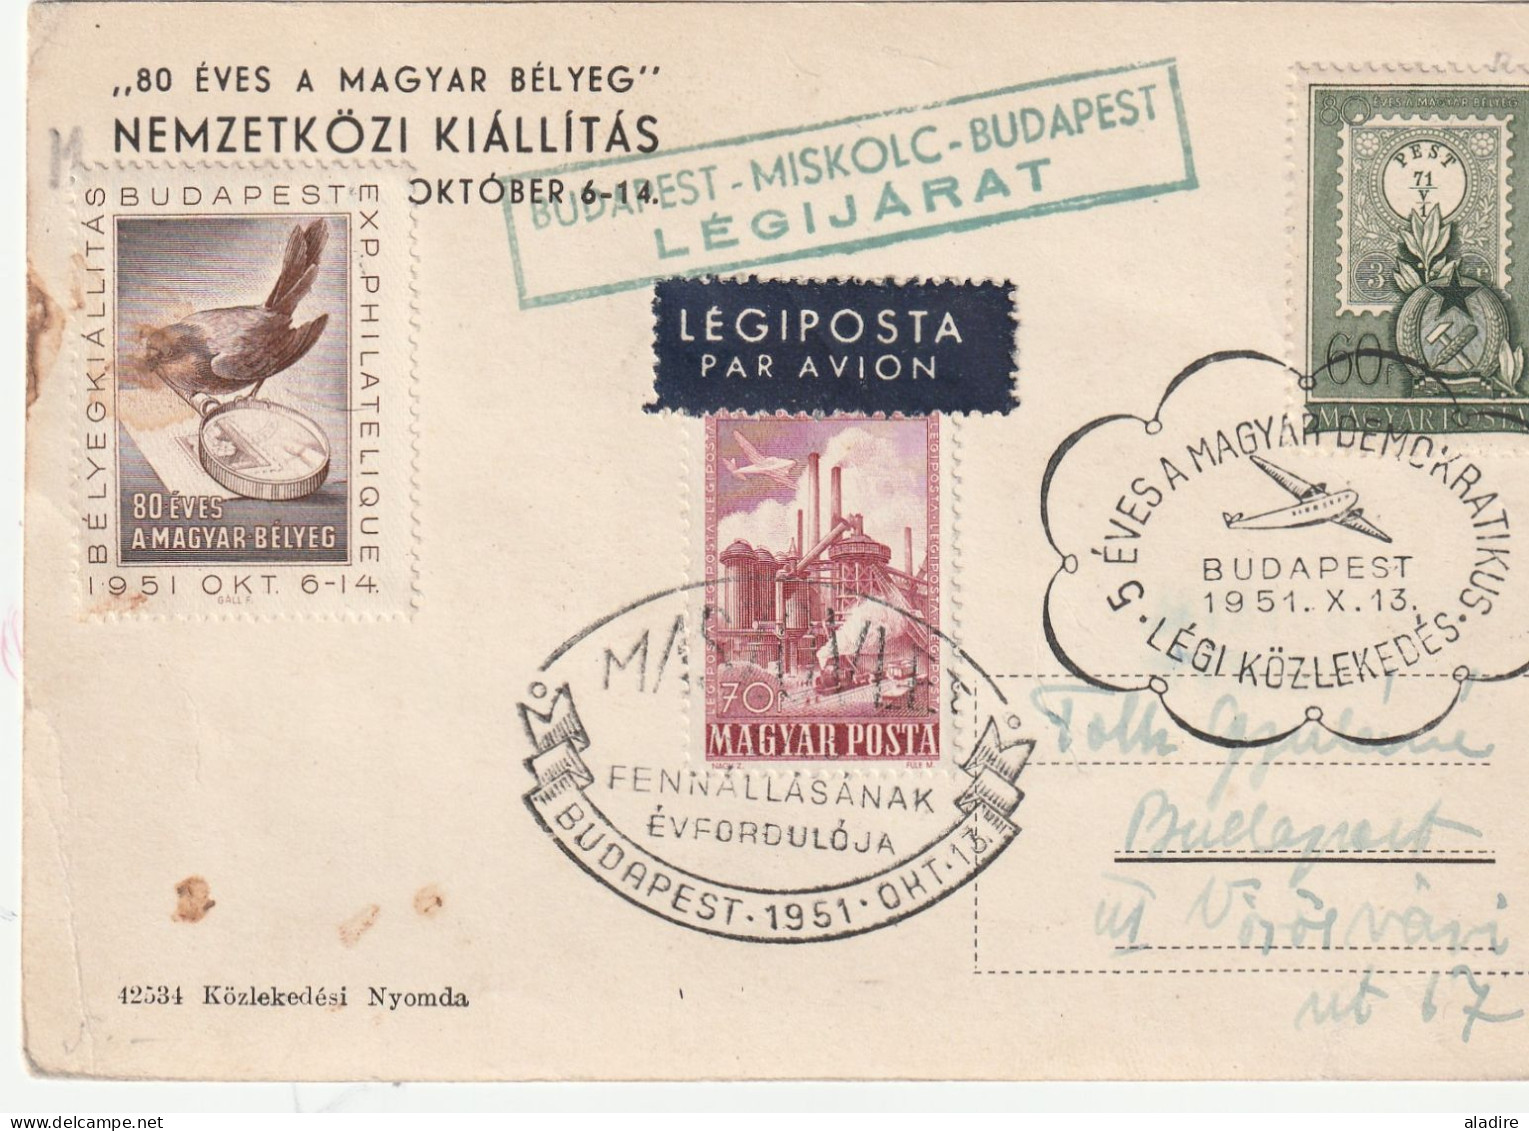 1914 / 1951 - HONGRIE - MAGYAR POSTA - lot de 12 enveloppes  et cartes  - 24 scans